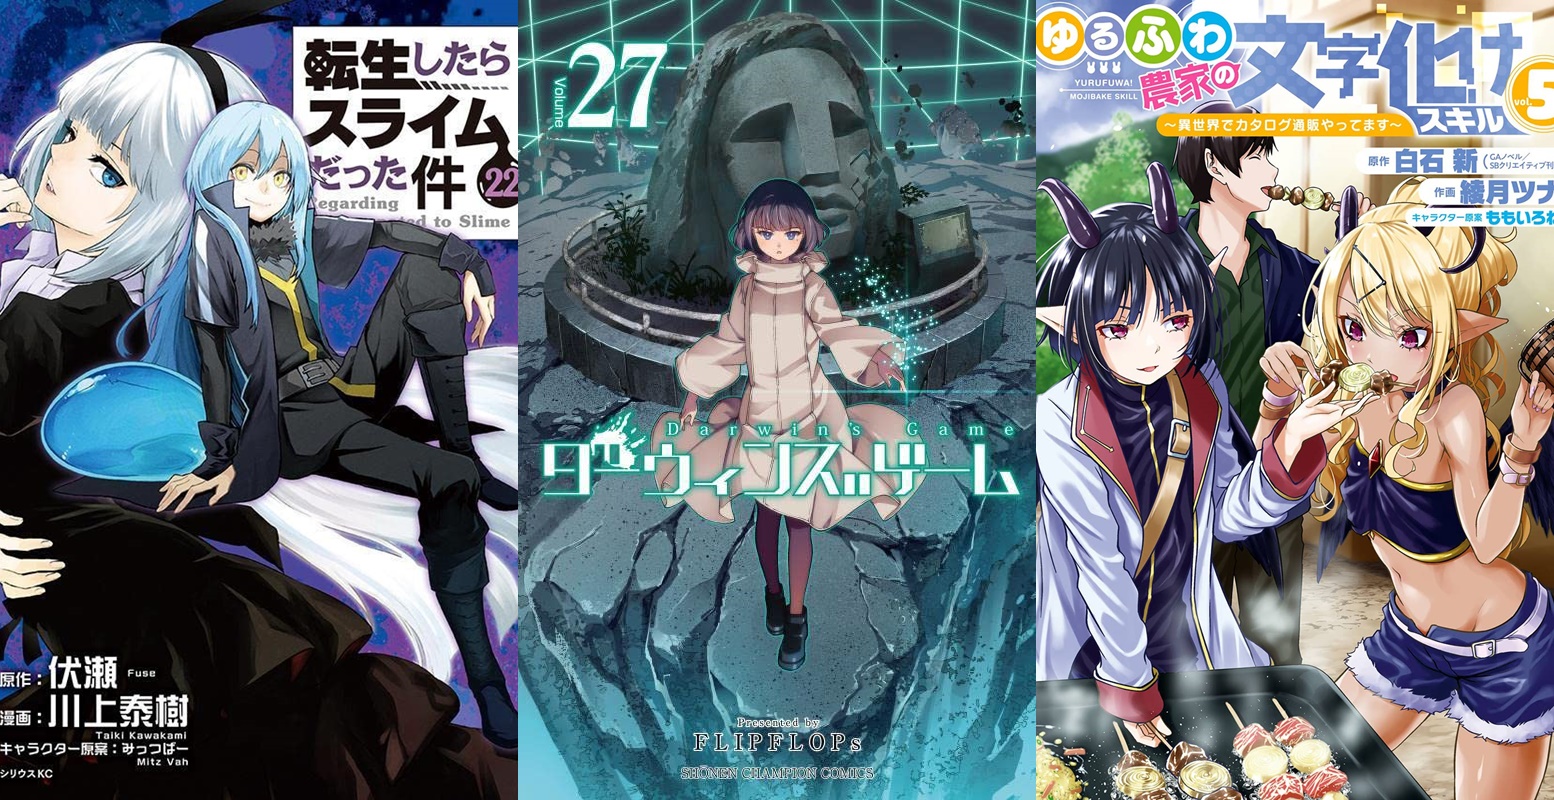 TOP vendas light novel no Japão – 27 de Dezembro a 2 de Janeiro 2022